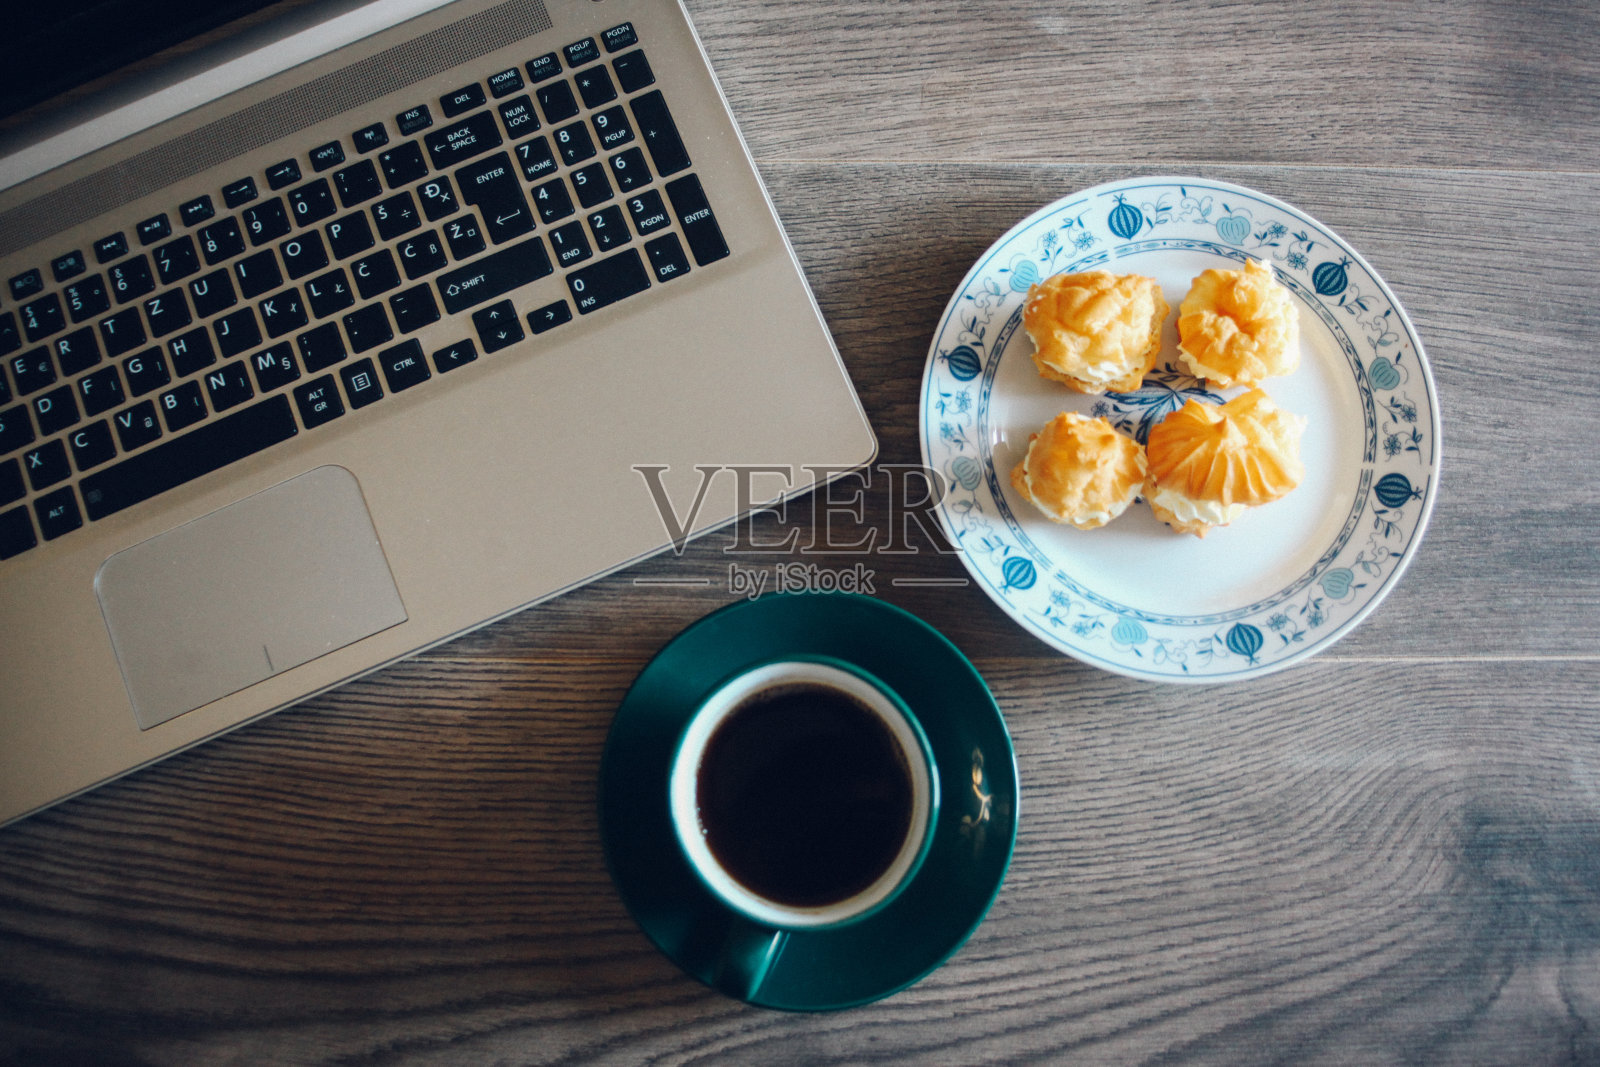 笔记本电脑，饼干和一杯咖啡放在木桌上照片摄影图片